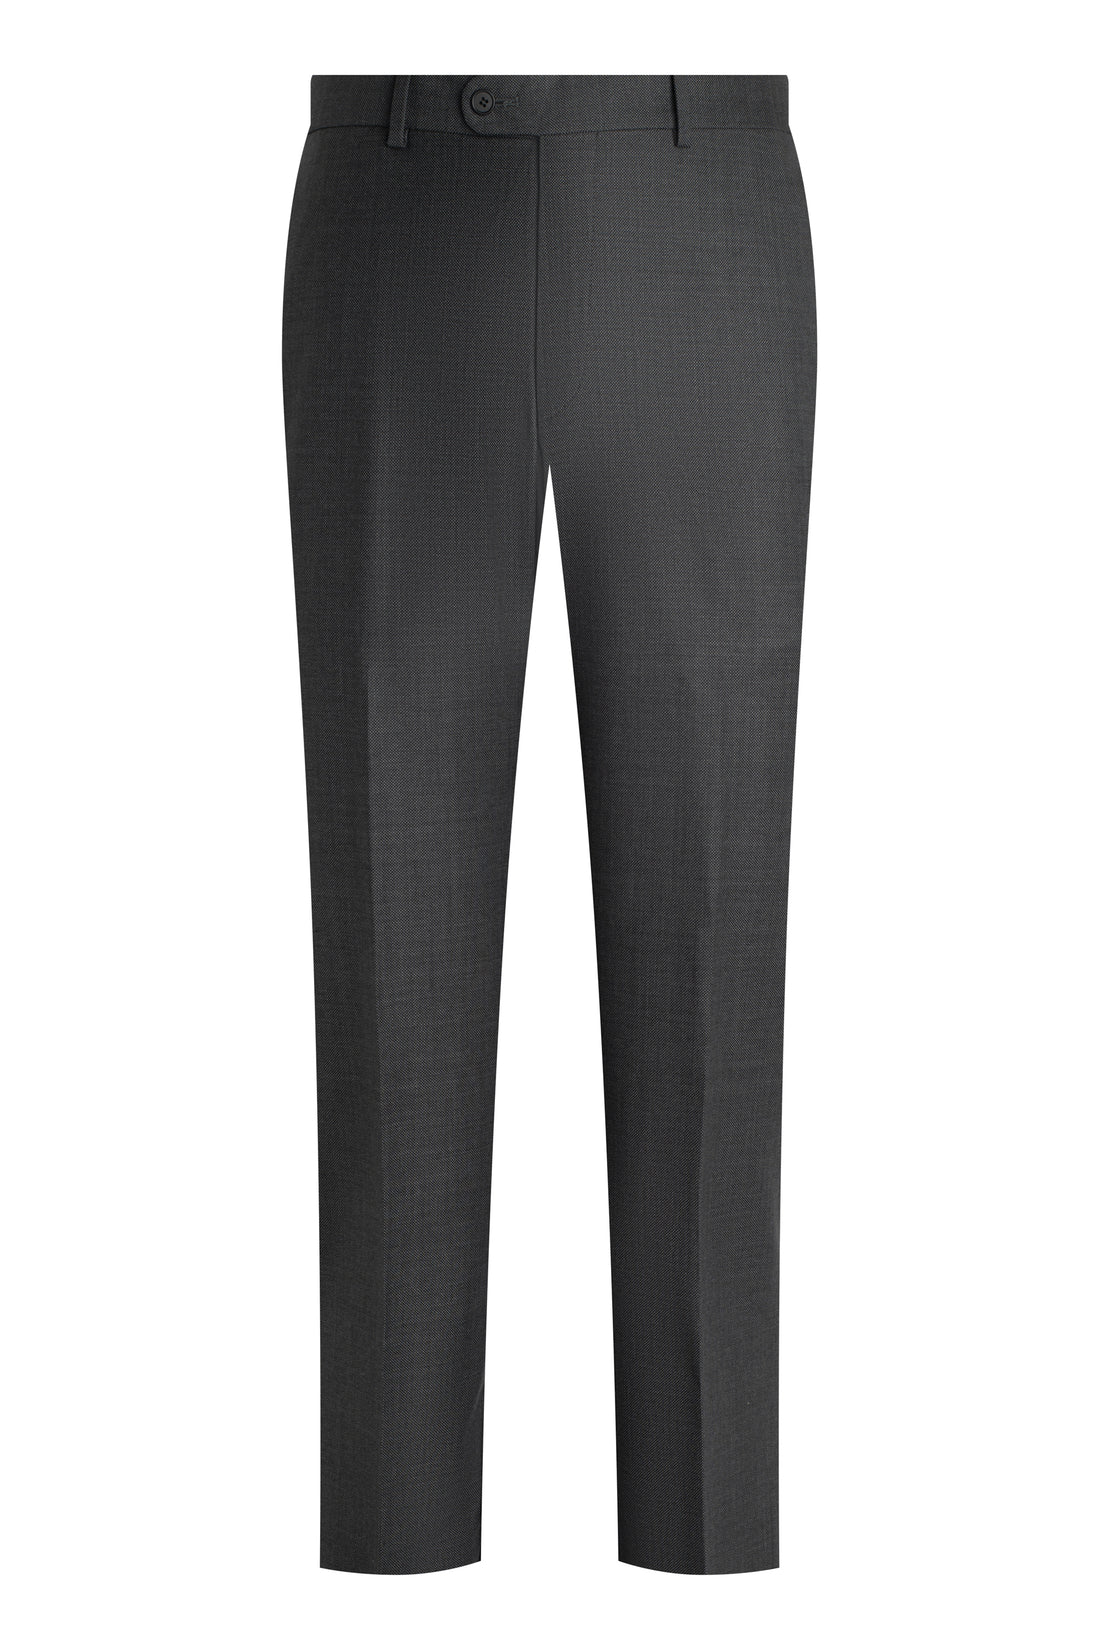 Grey Super 150s Birdseye Suit front pant